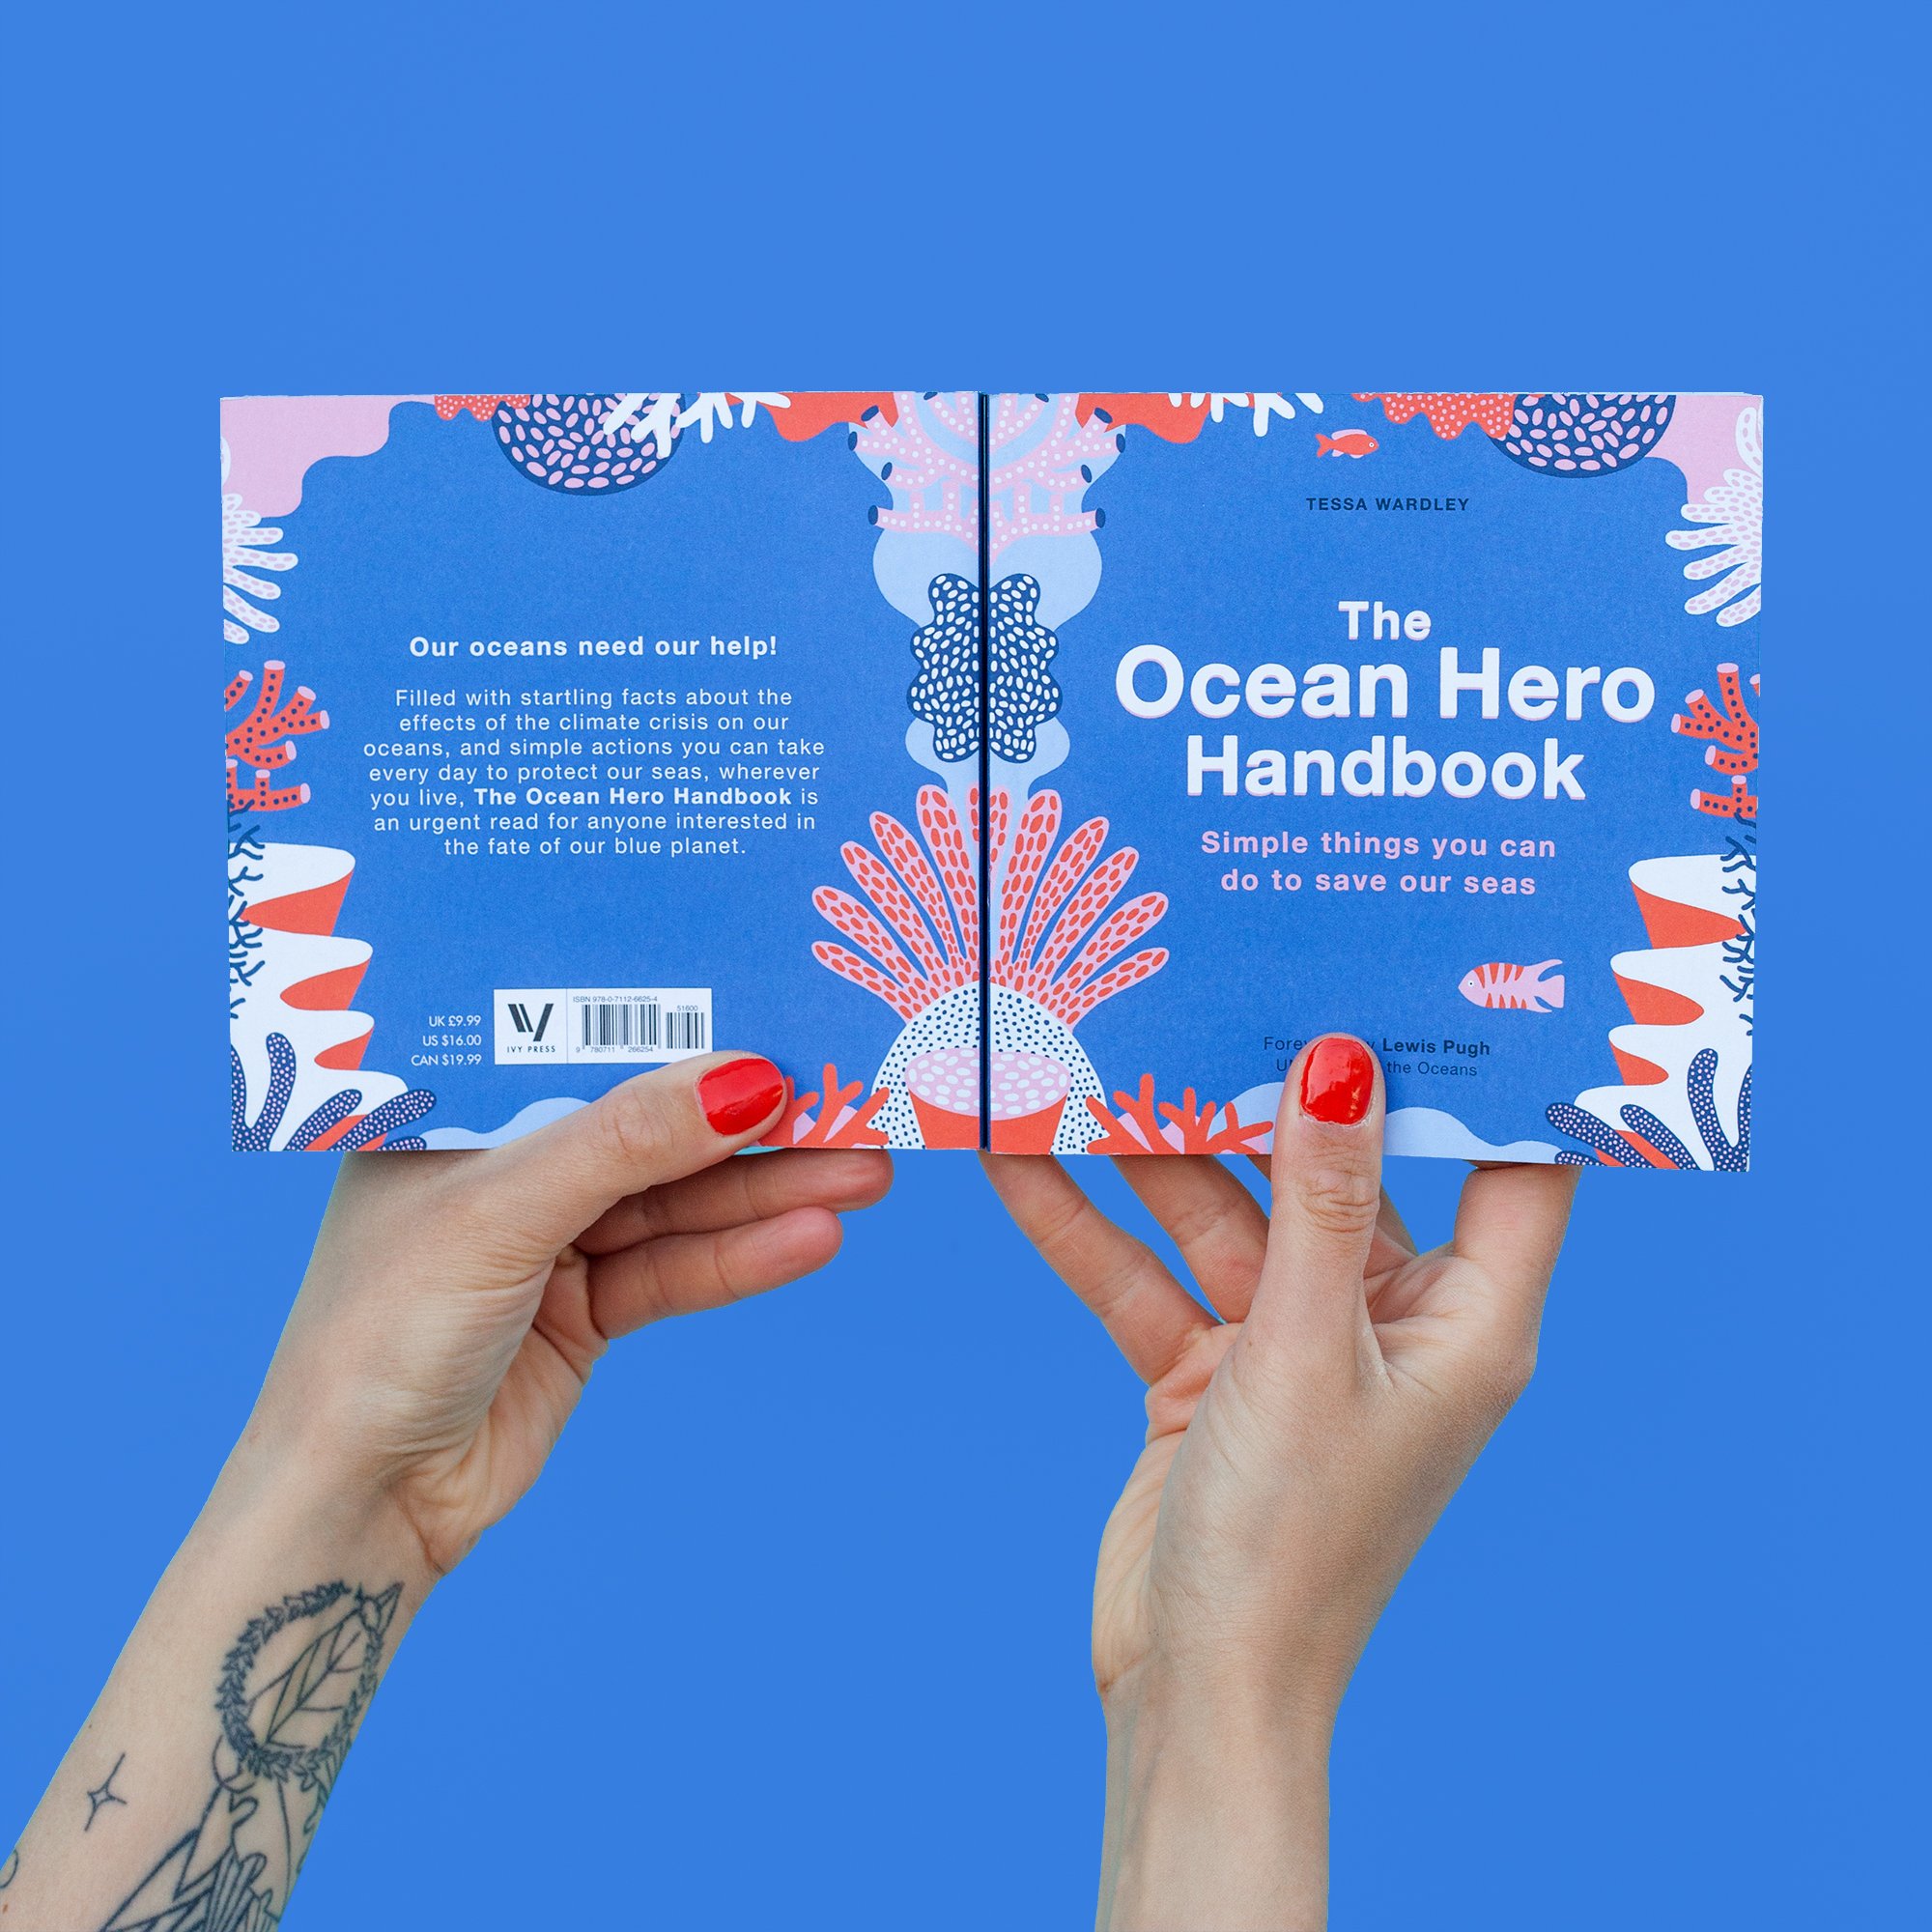 The Ocean hero handbook 5.jpg